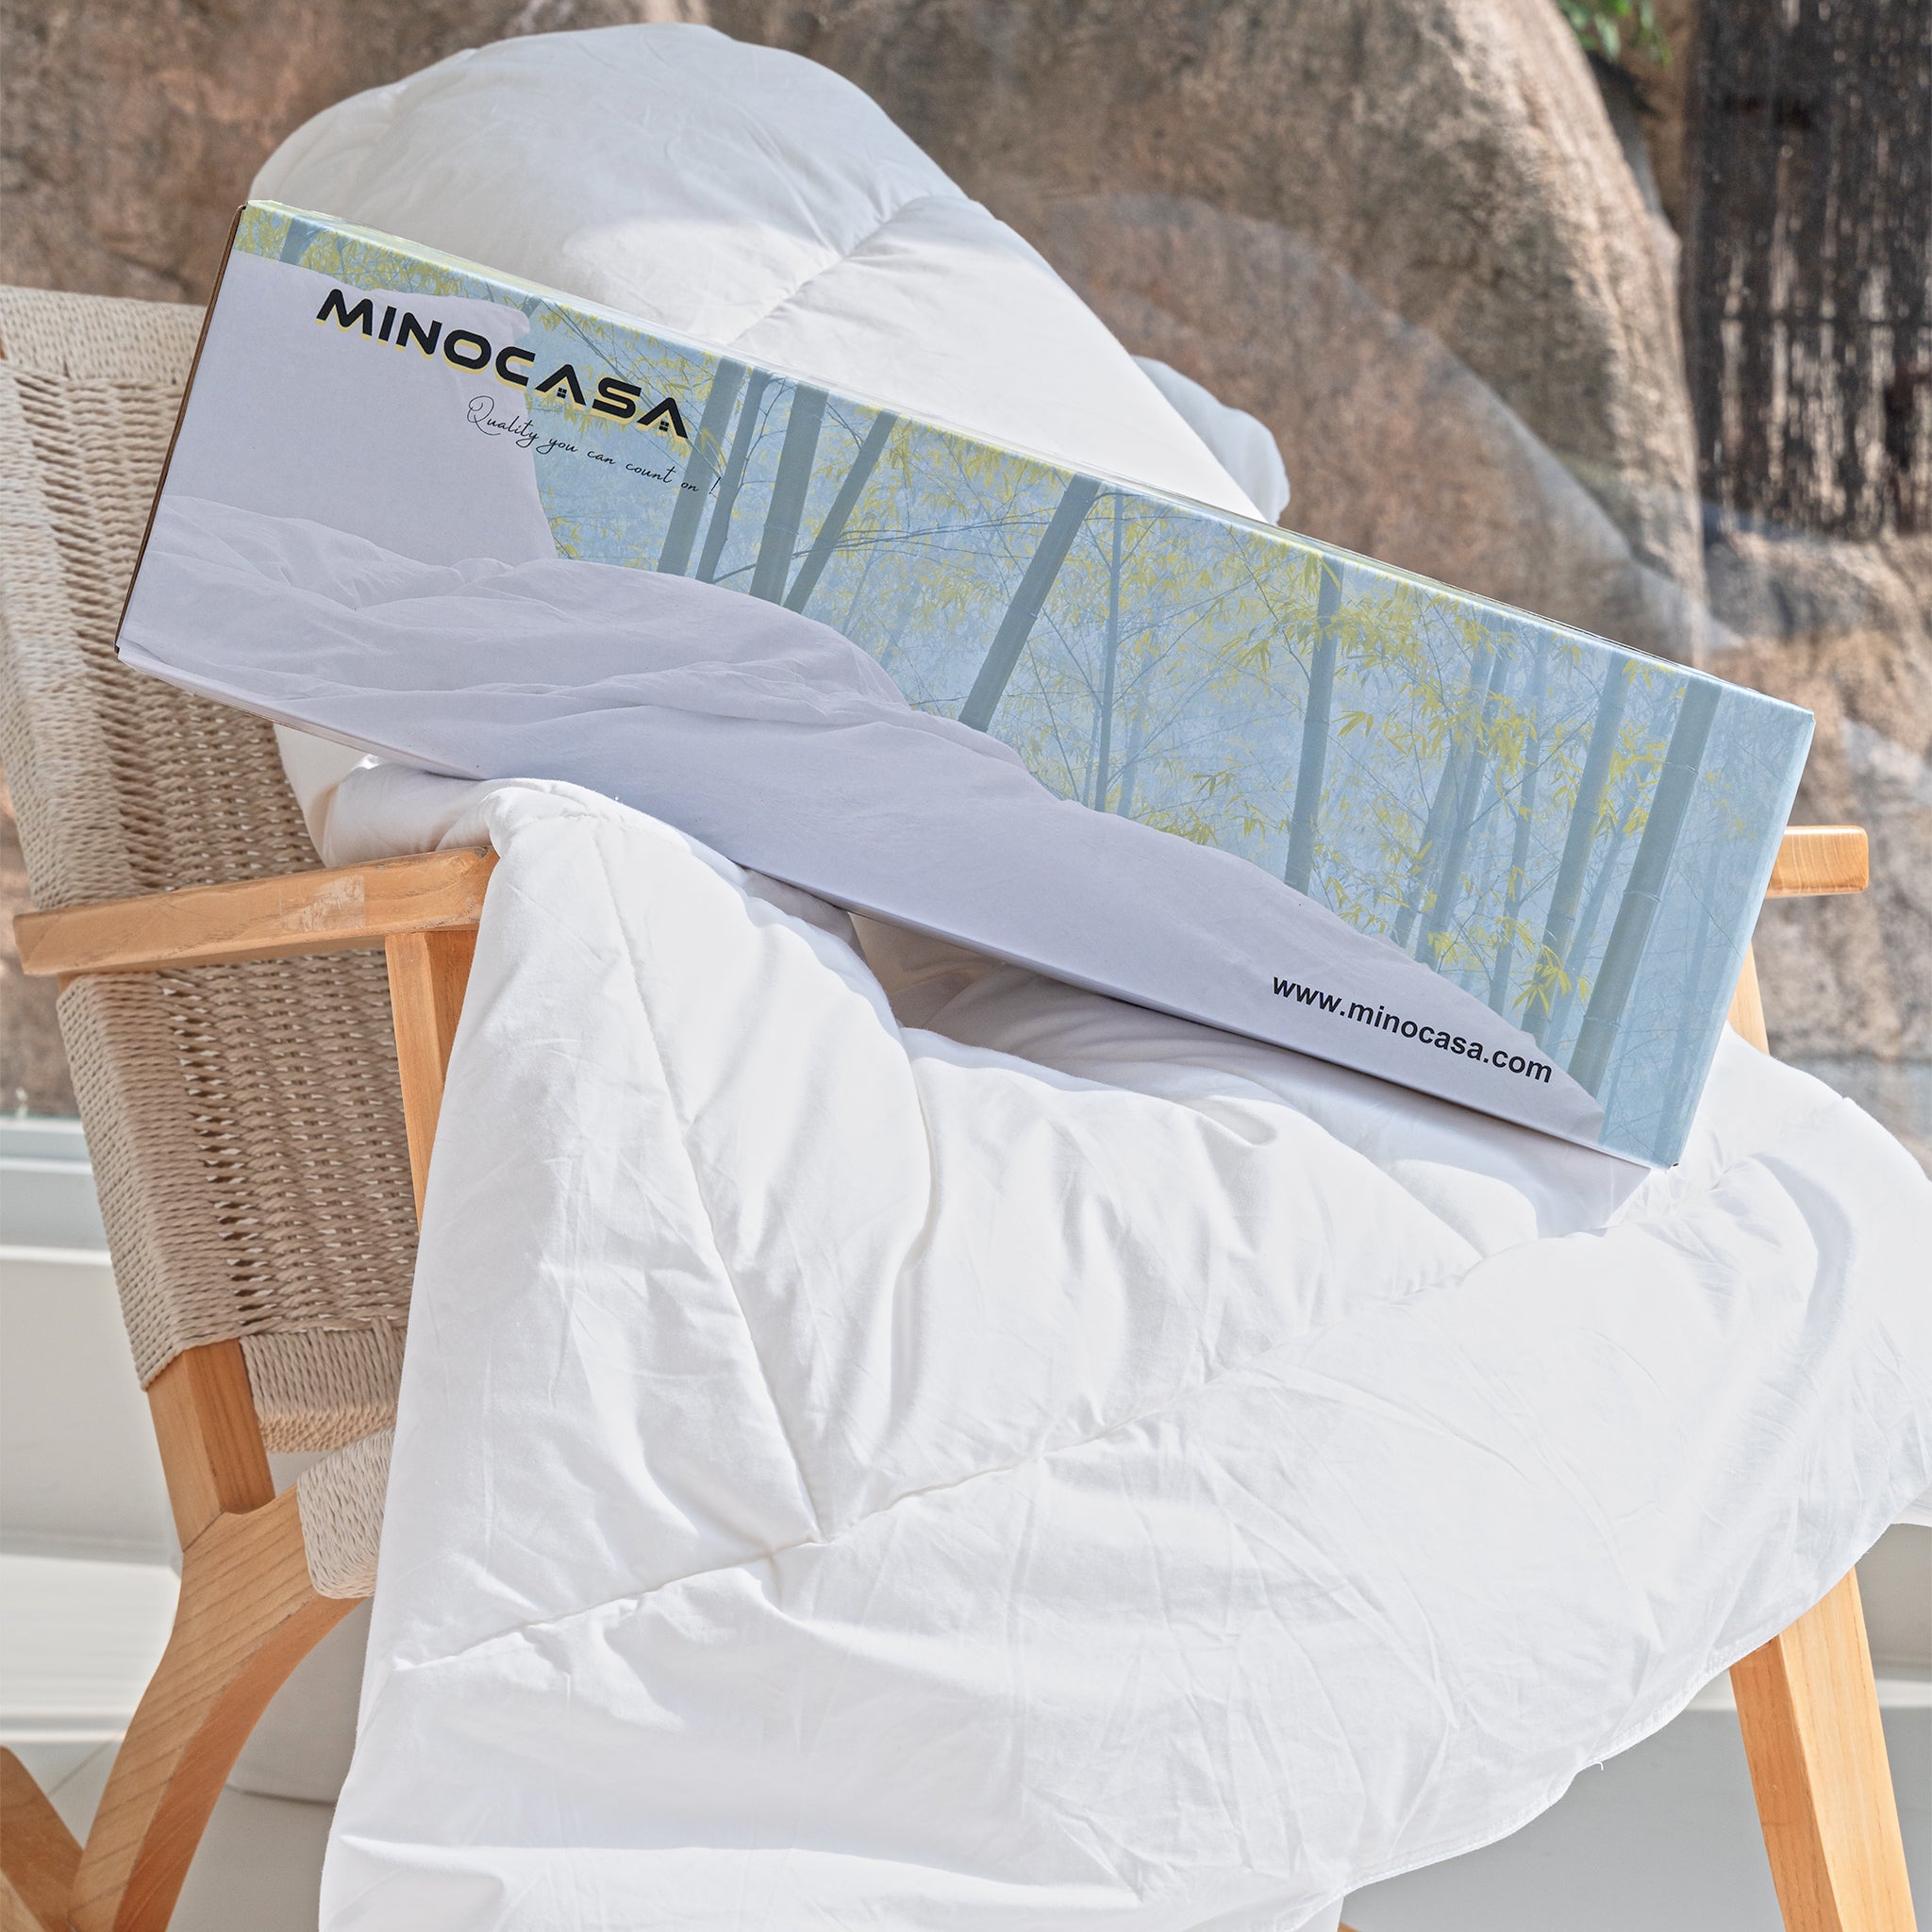 Minocasa SeasonBreeze Luxe 300GSM Comforter in a Box